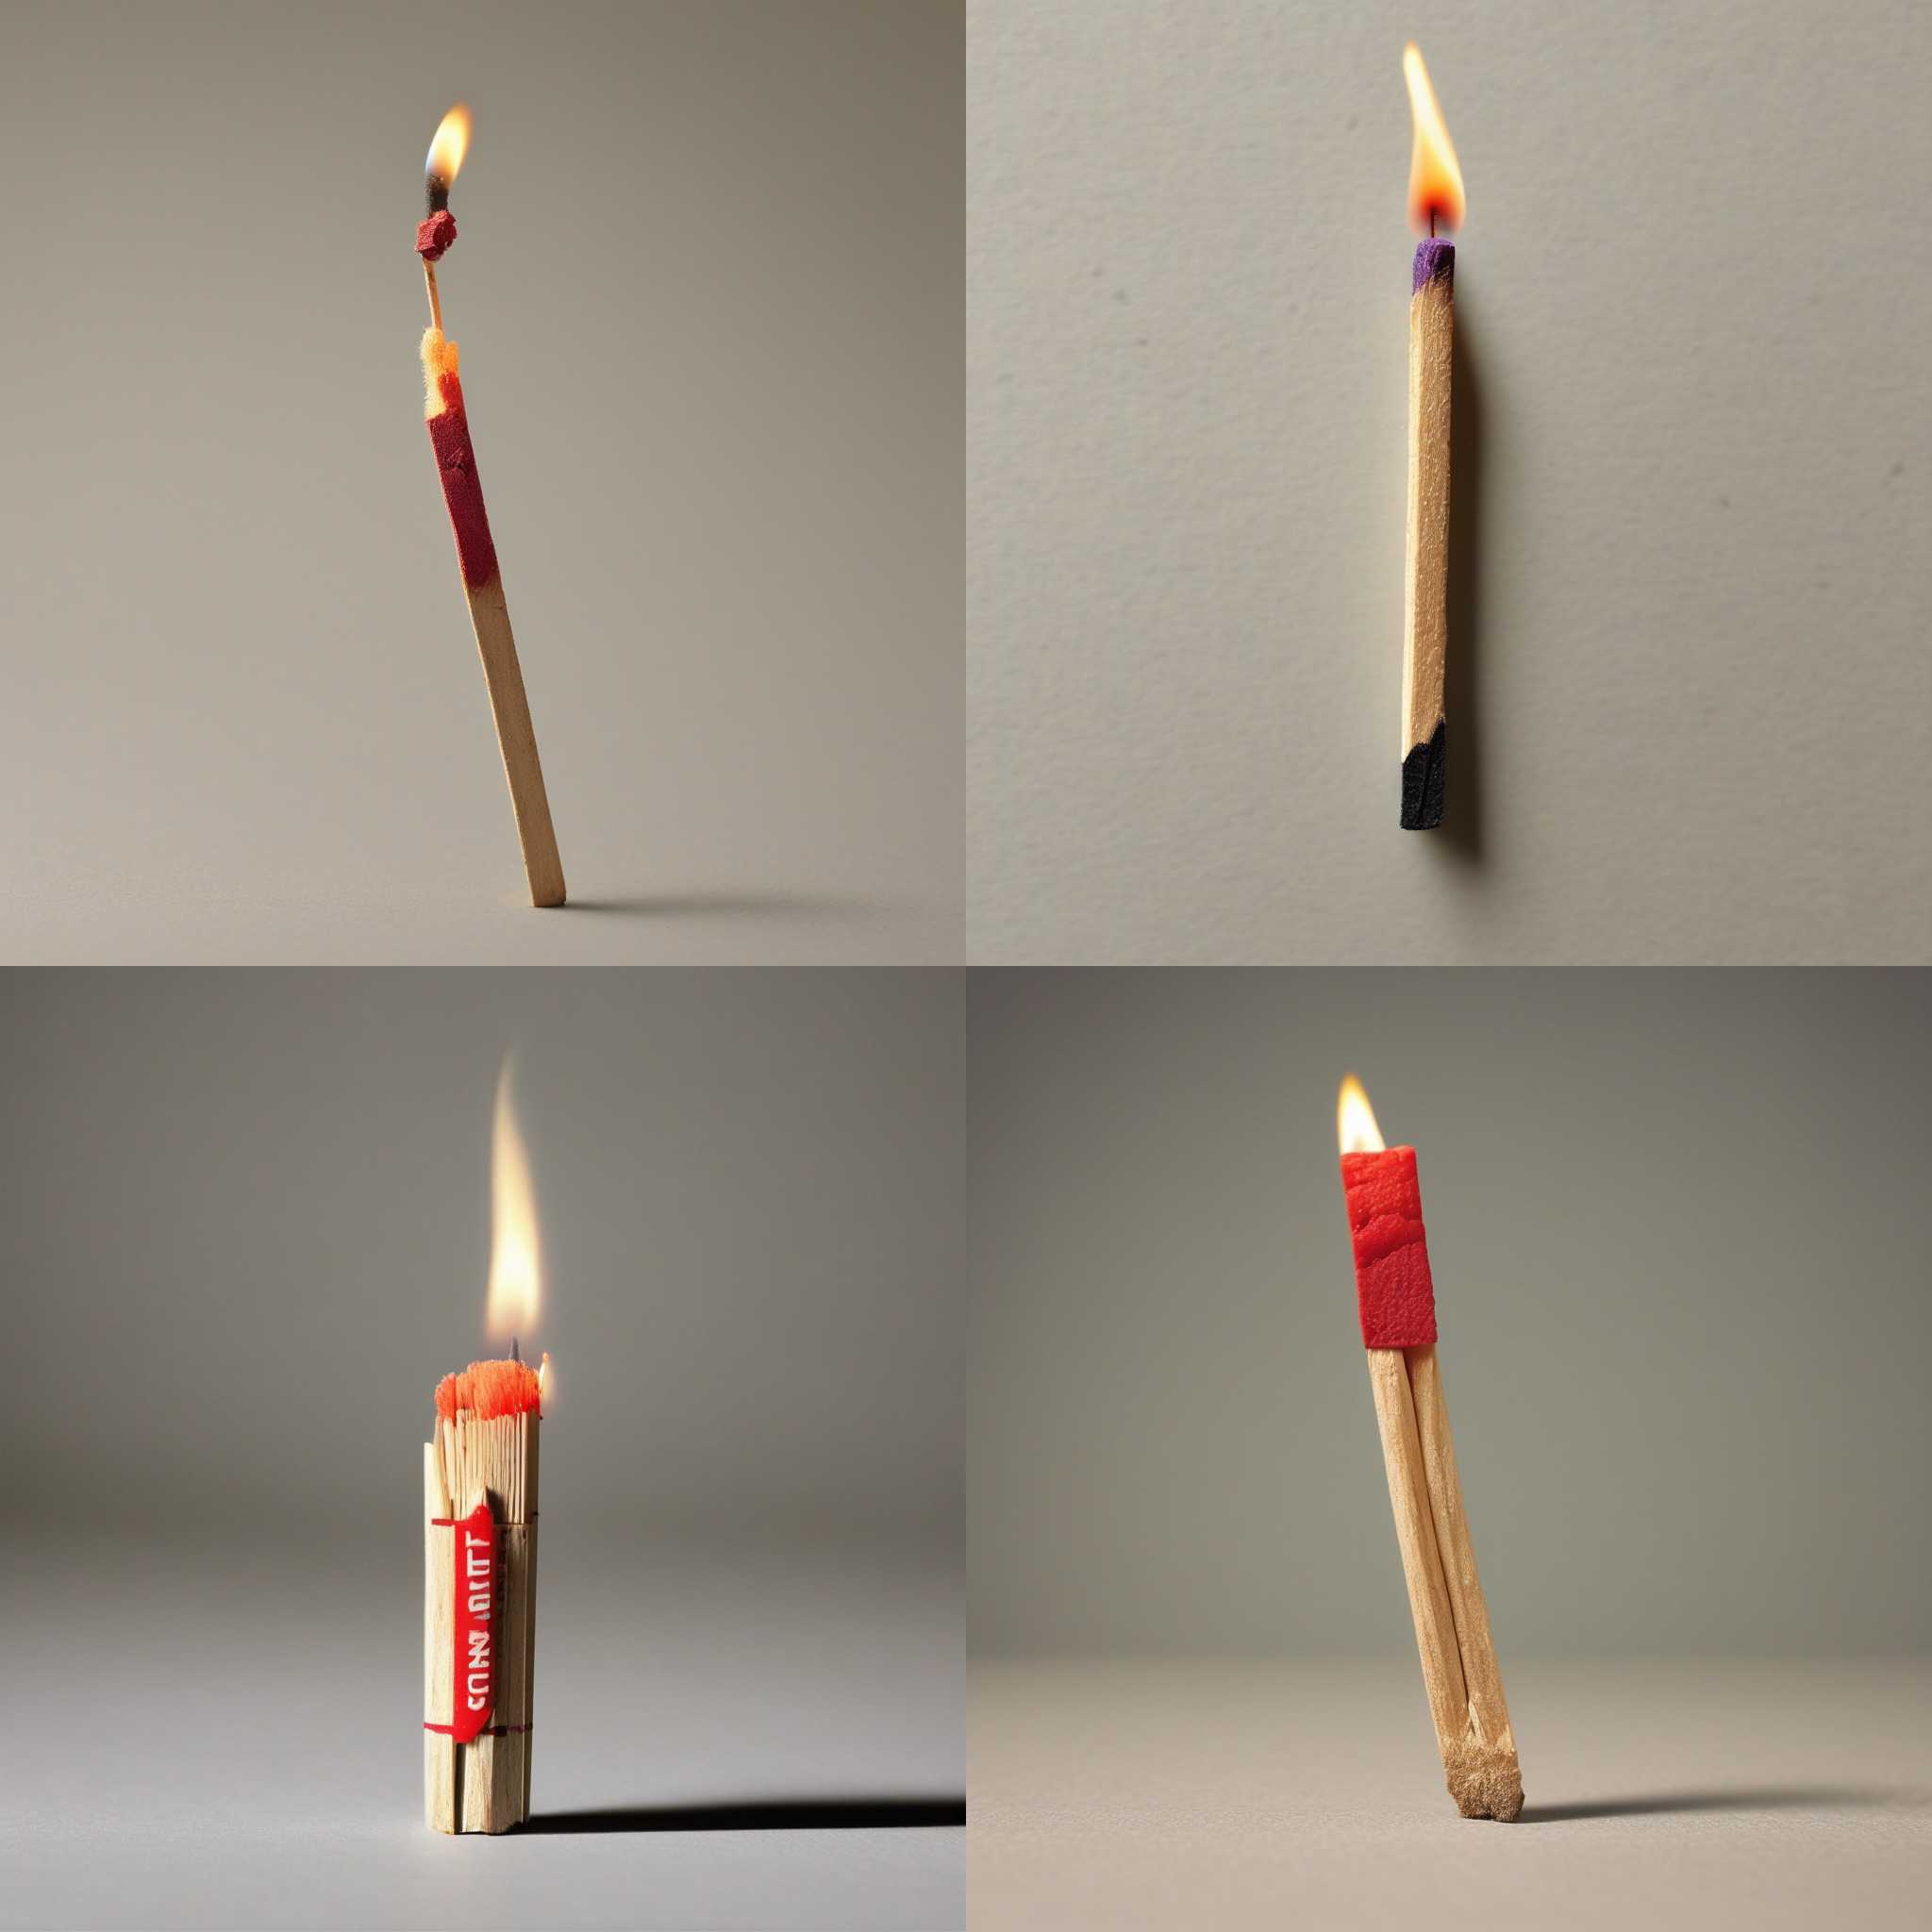 A matchstick struck against a matchbox